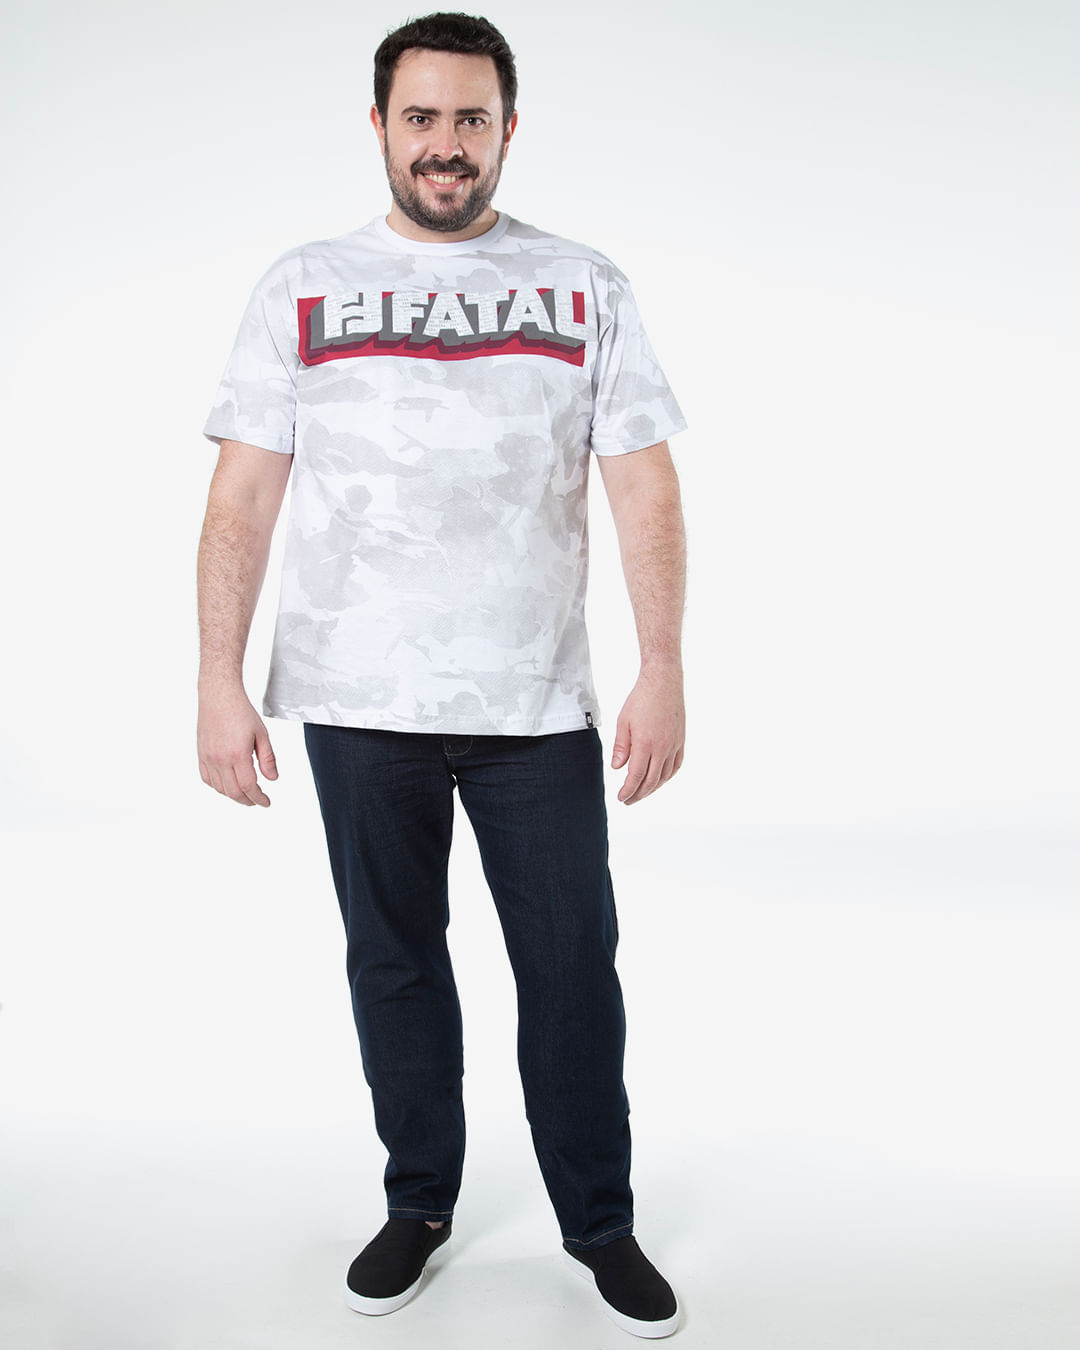 Camiseta-Masculina-Plus-Size-Estampa-Camuflada-Fatal-Branca